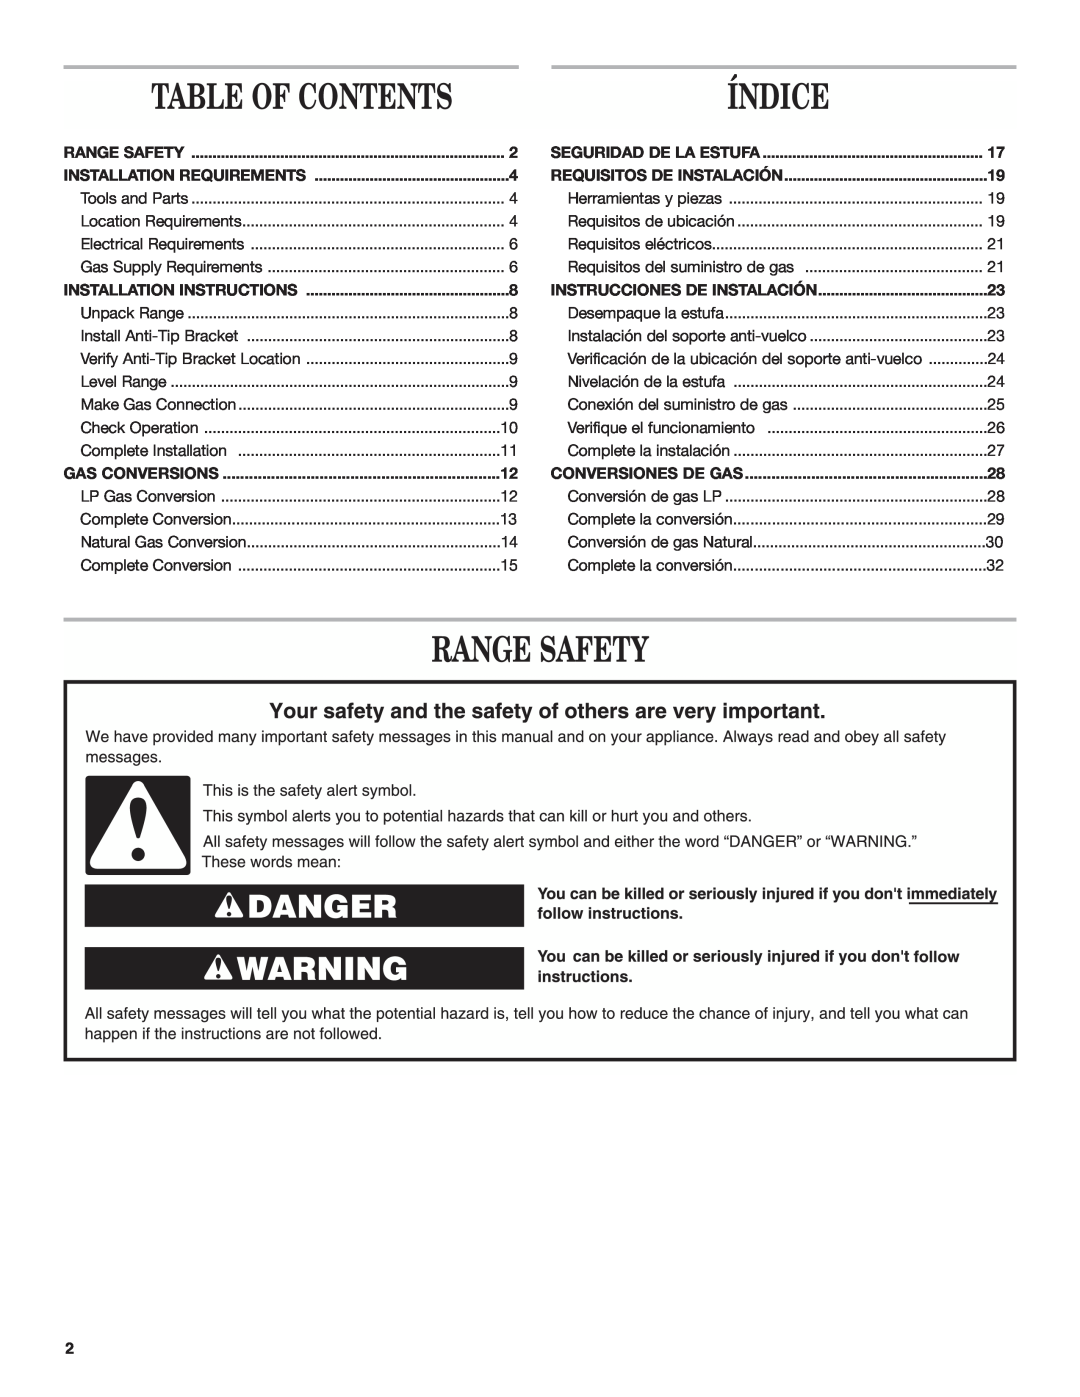 Amana AGG222VDW Índice, Range Safety, Table Of Contents, Seguridad De La Estufa, Installation Requirements 